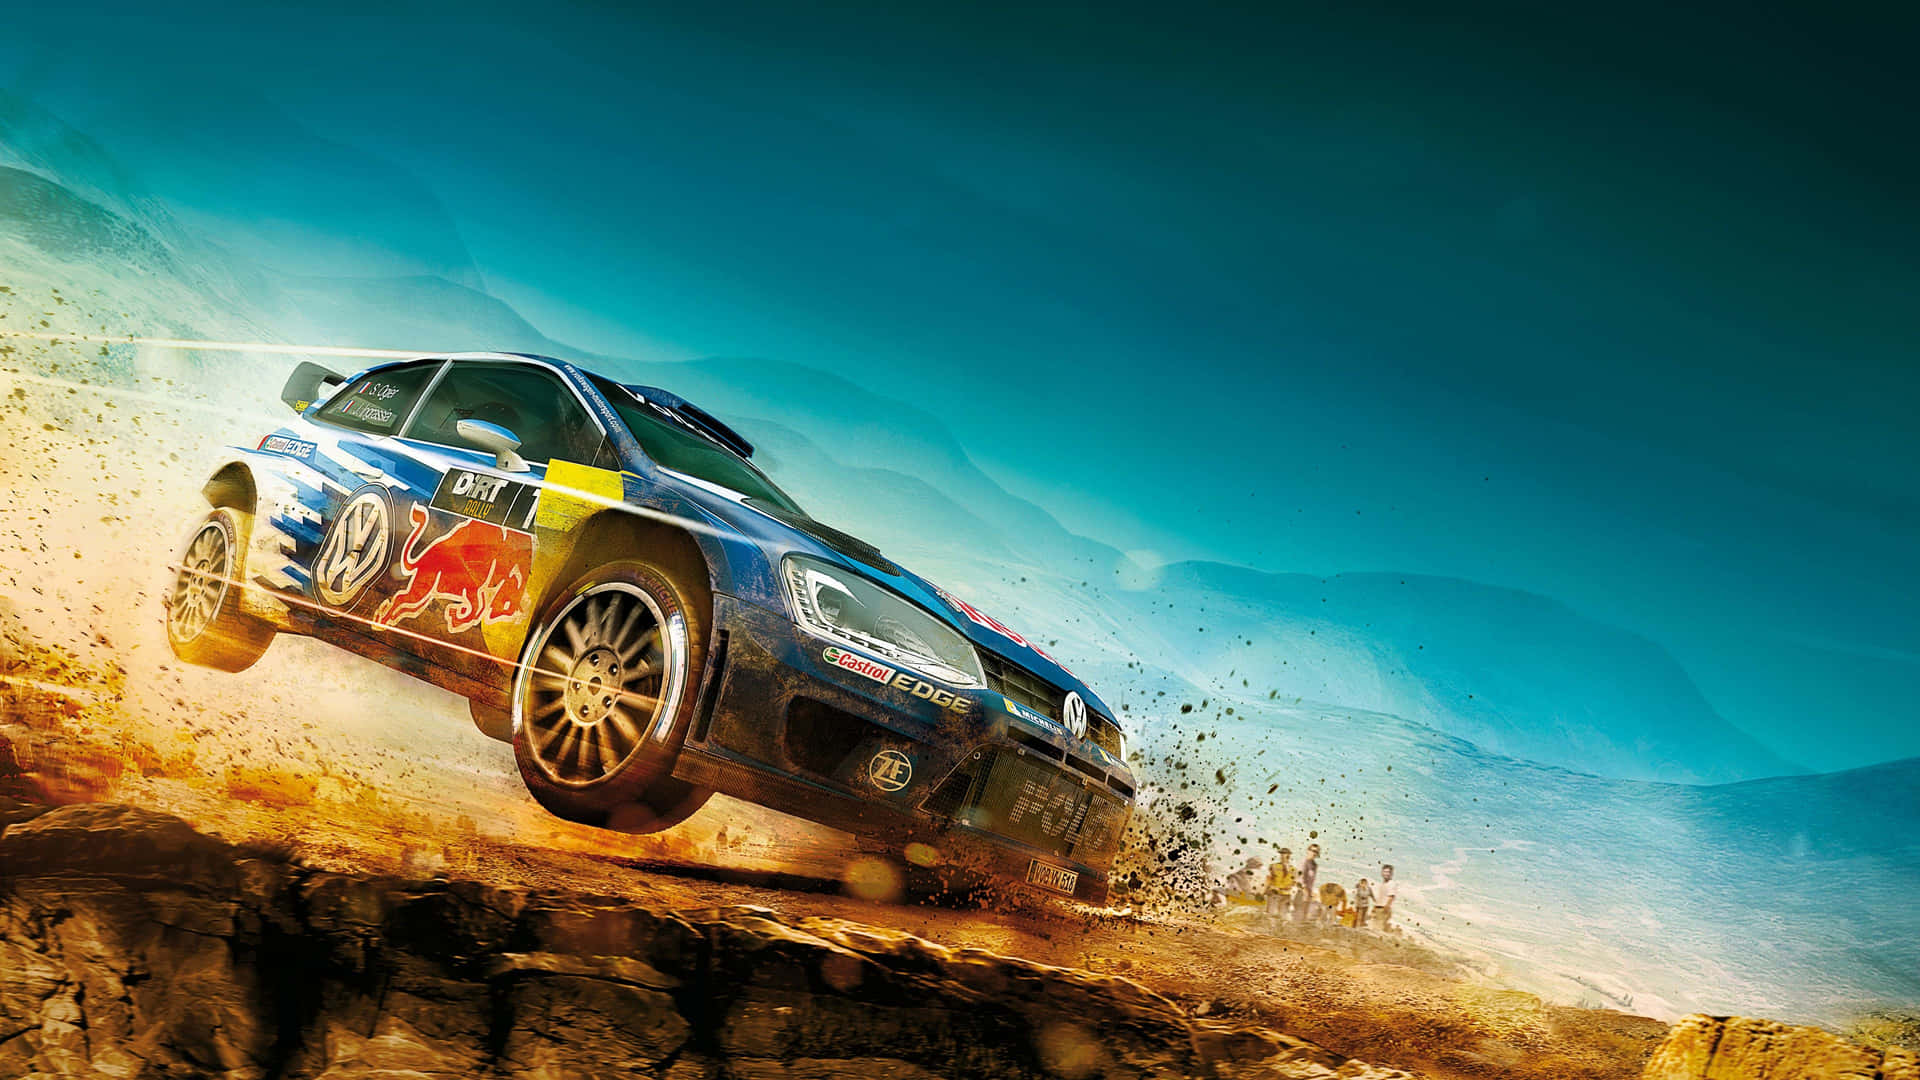 Dirt Rally Sports 4K Tapet: Kør og hopp ind i handlingen med dette ultra-realistiske Dirt Rally 4K-tapet. Wallpaper